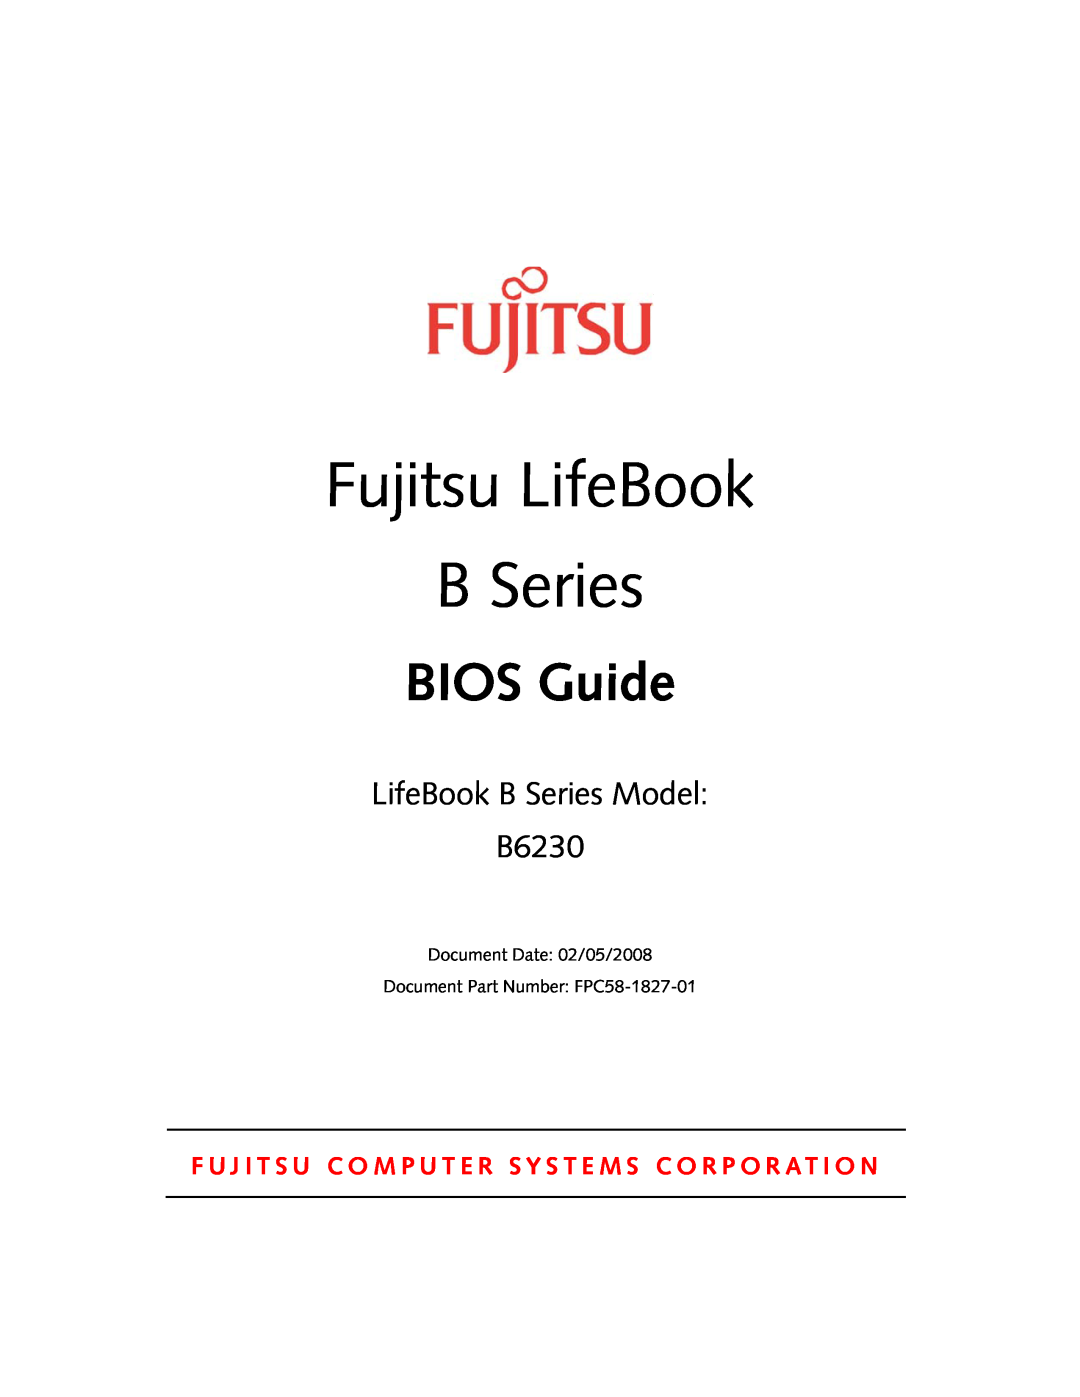 Fujitsu Siemens Computers manual Fujitsu LifeBook, BIOS Guide, LifeBook B Series Model B6230 